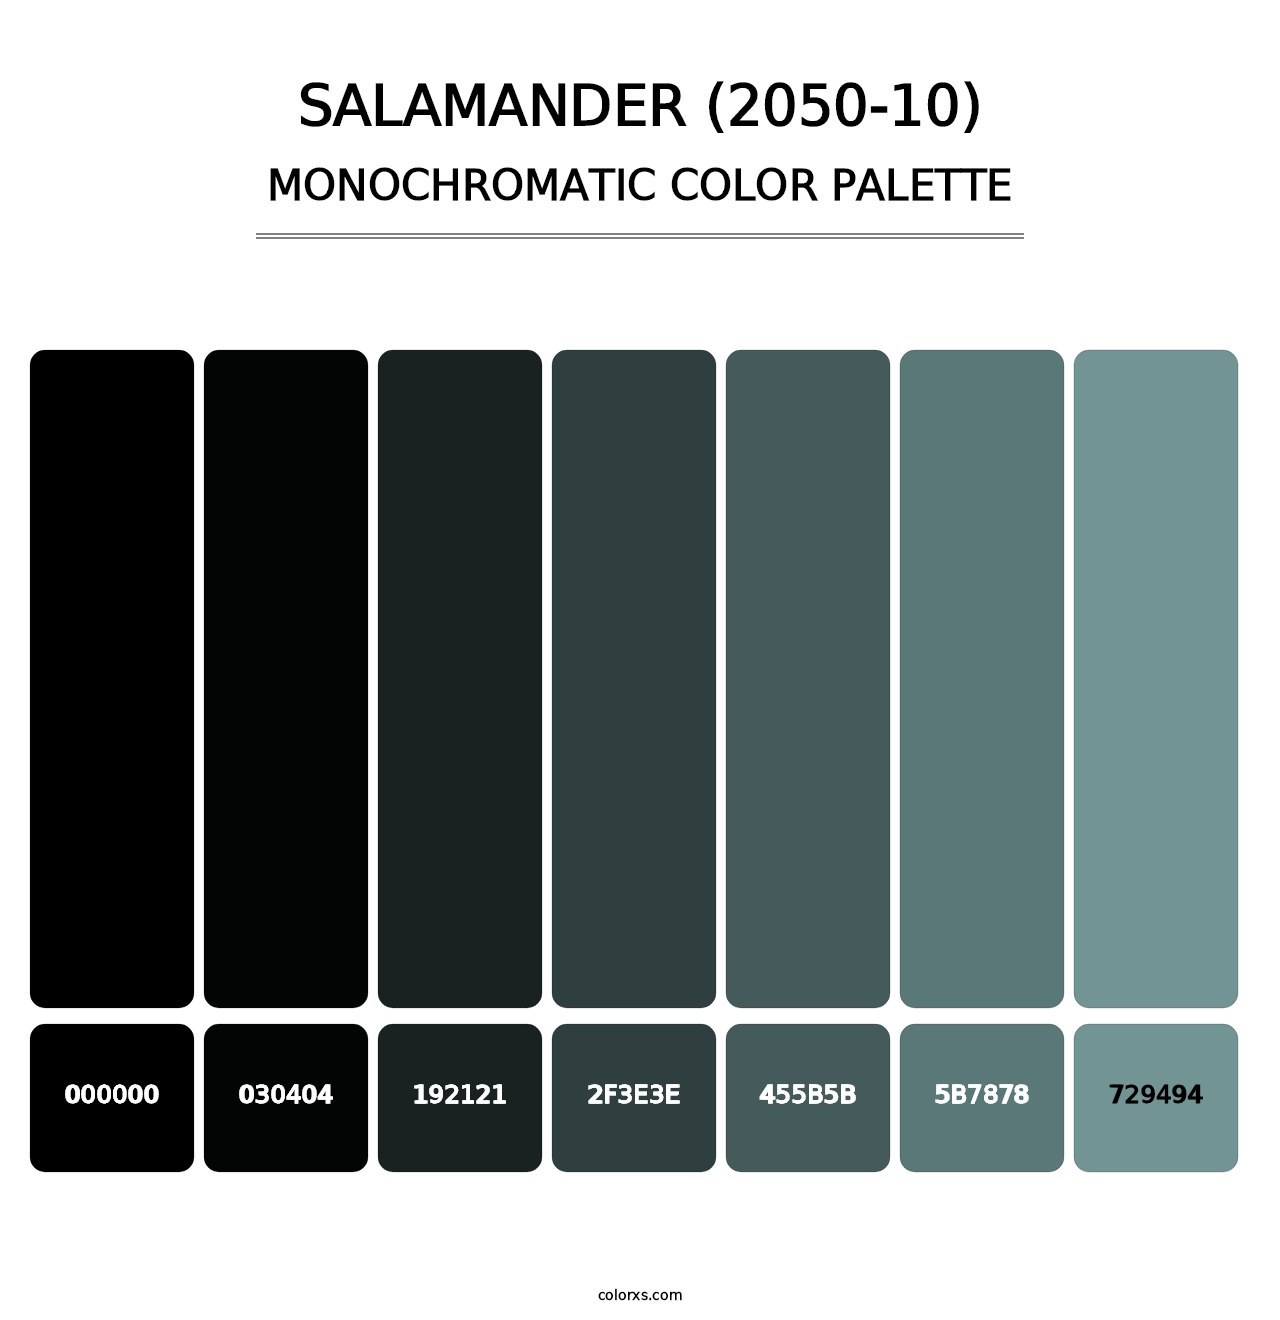 Salamander (2050-10) - Monochromatic Color Palette